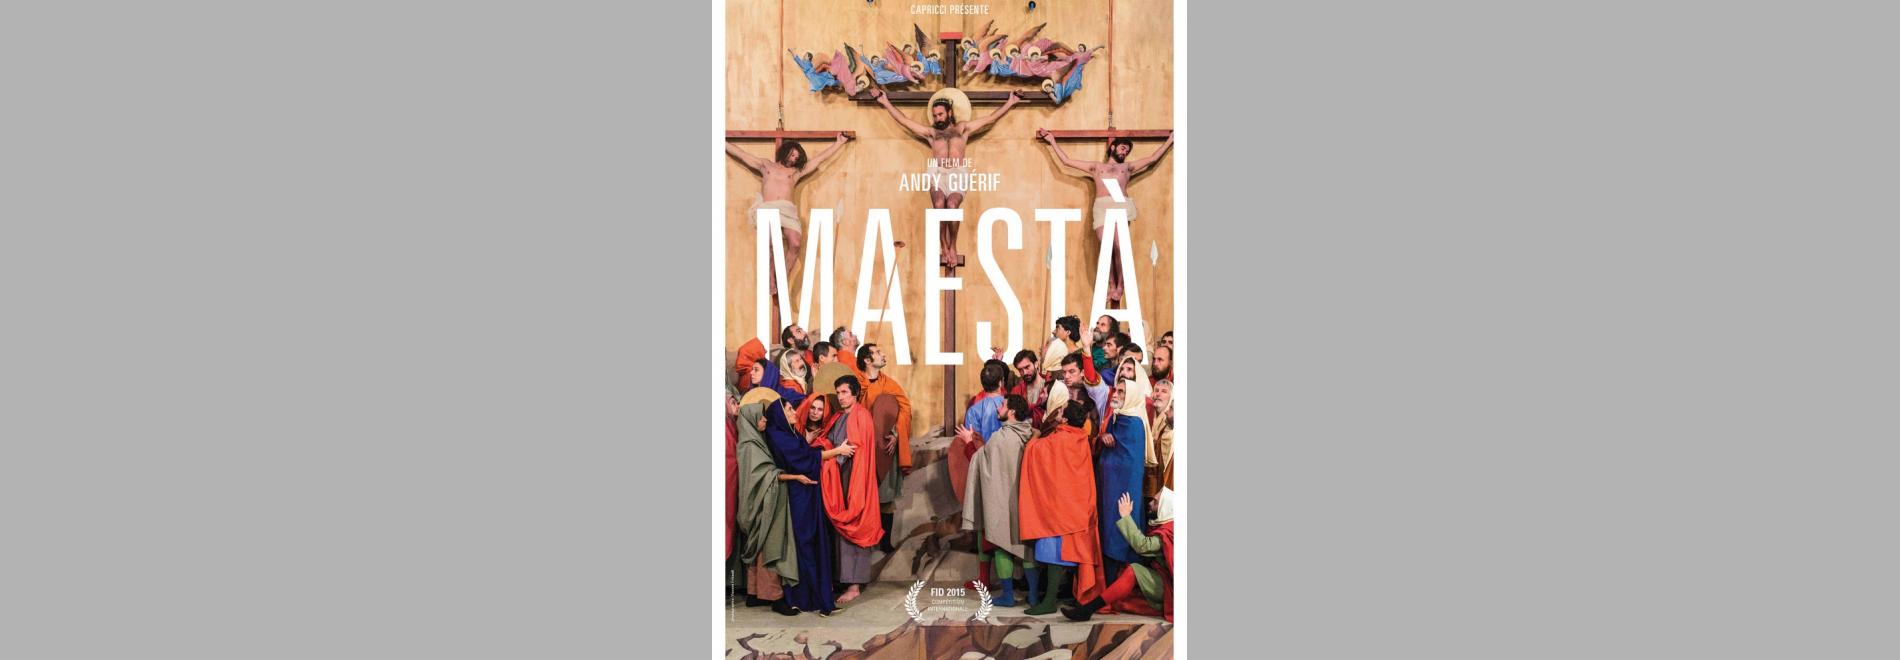 Maestà, la Passion du Christ (Andy Guérif, 2015)